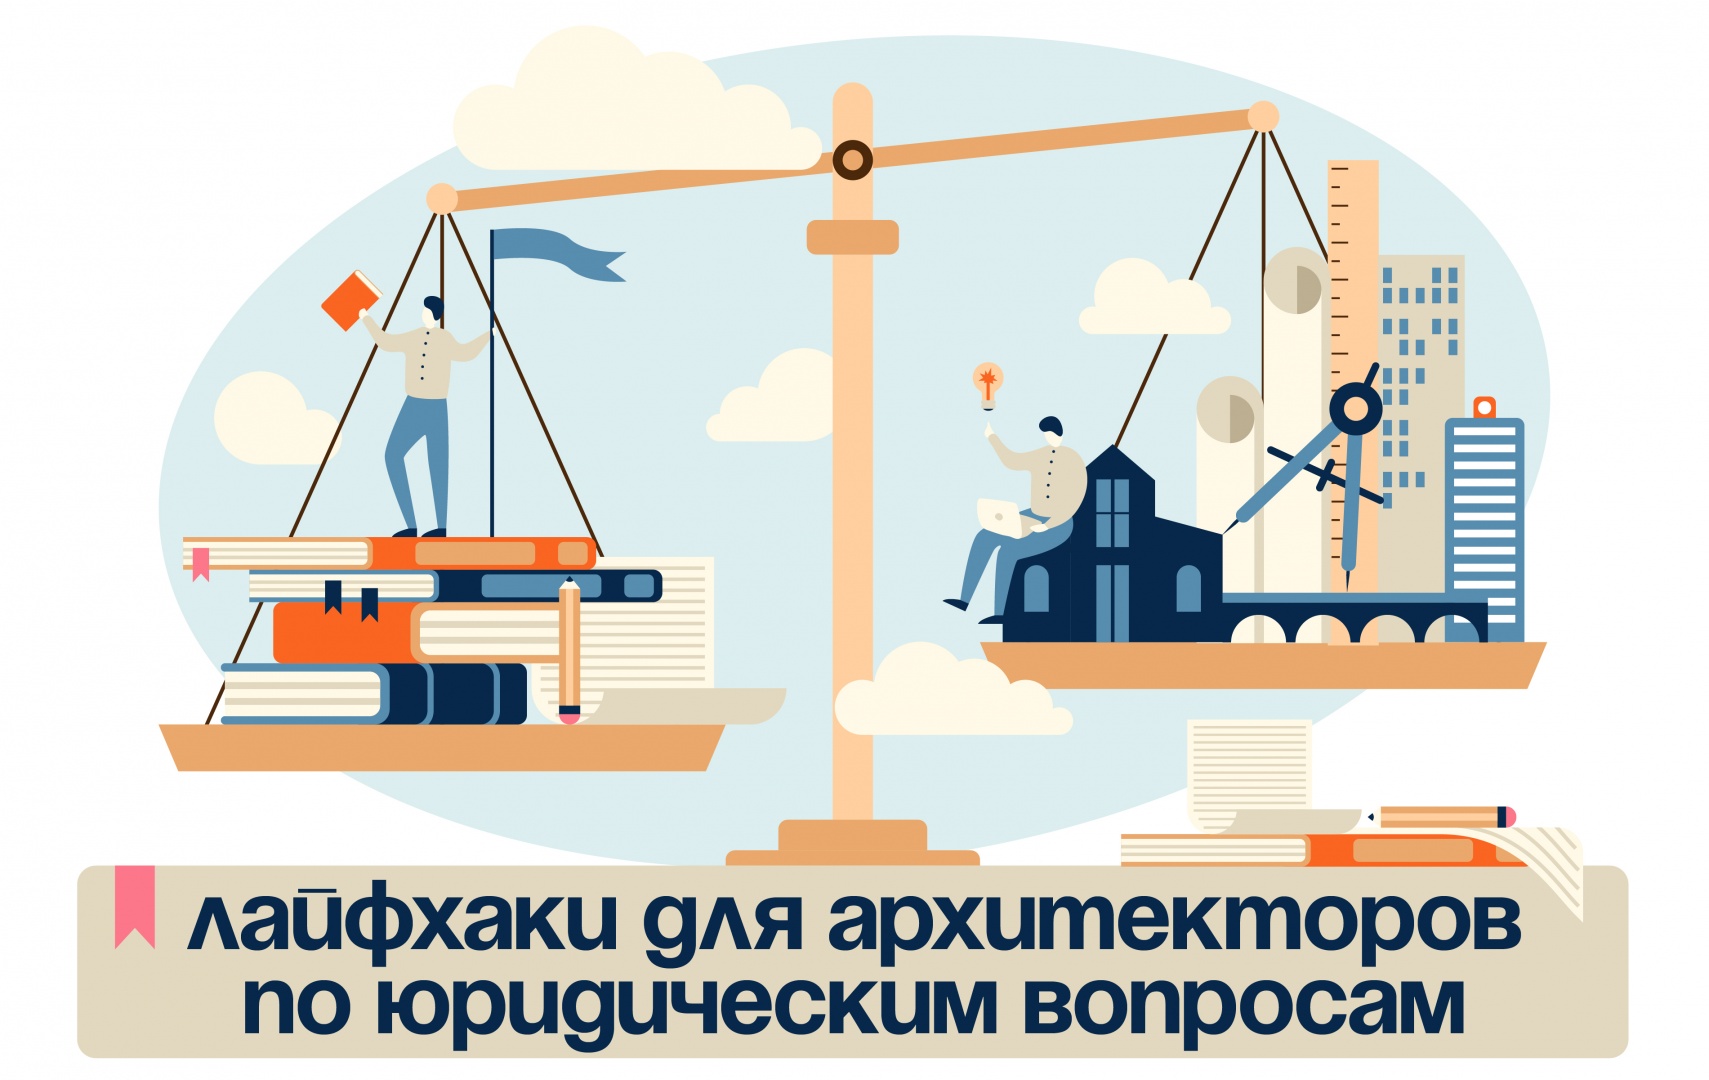 Бесплатный онлайн-курс «Лайфхаки для архитекторов по юридическим вопросам» от Архитекторы.рф